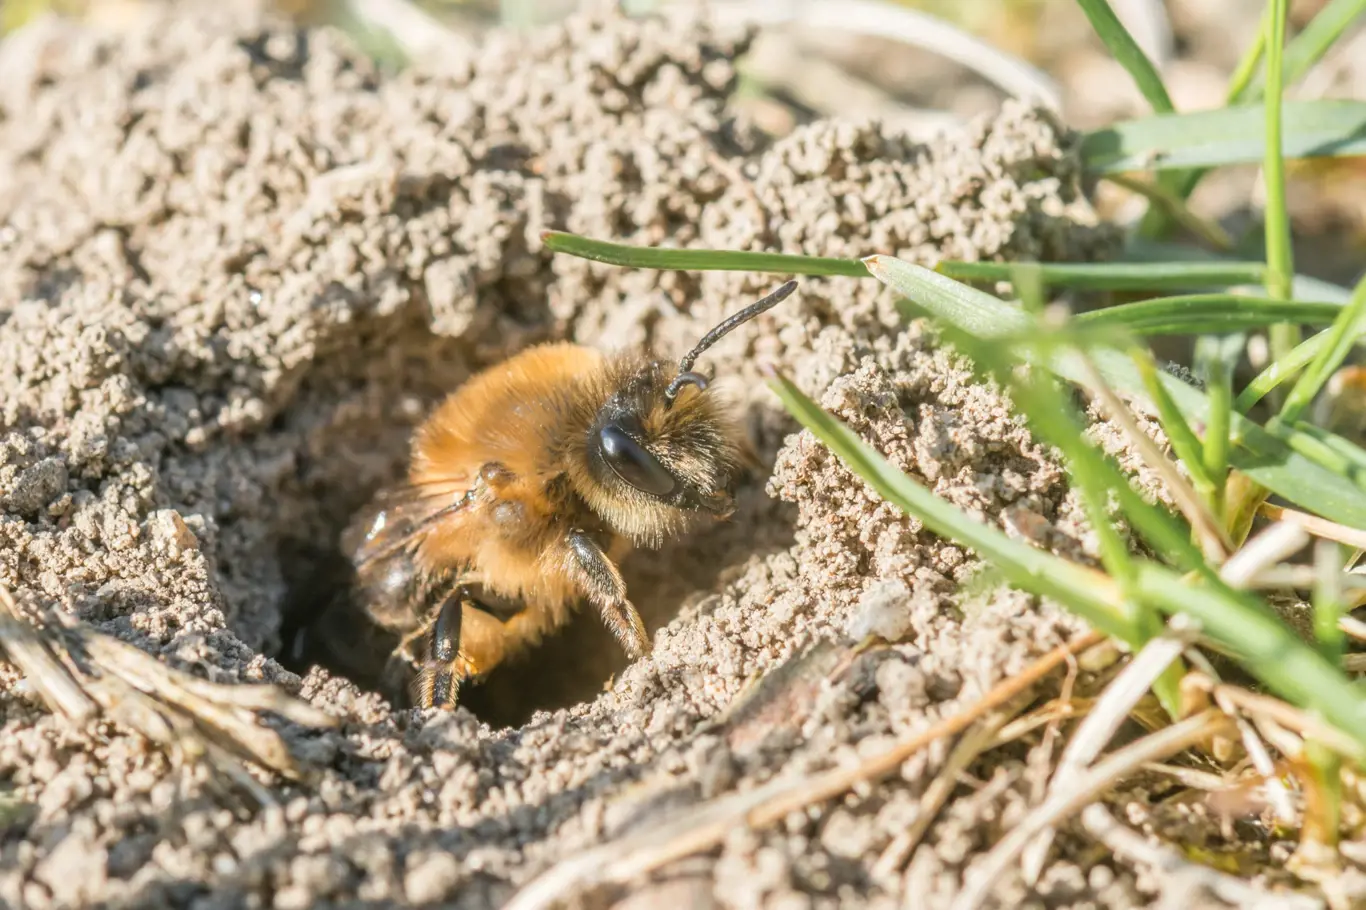 Každá samička včel samotářek si sama staví a zásobuje hnízdo a umírá dříve, než se objeví další generace včel.